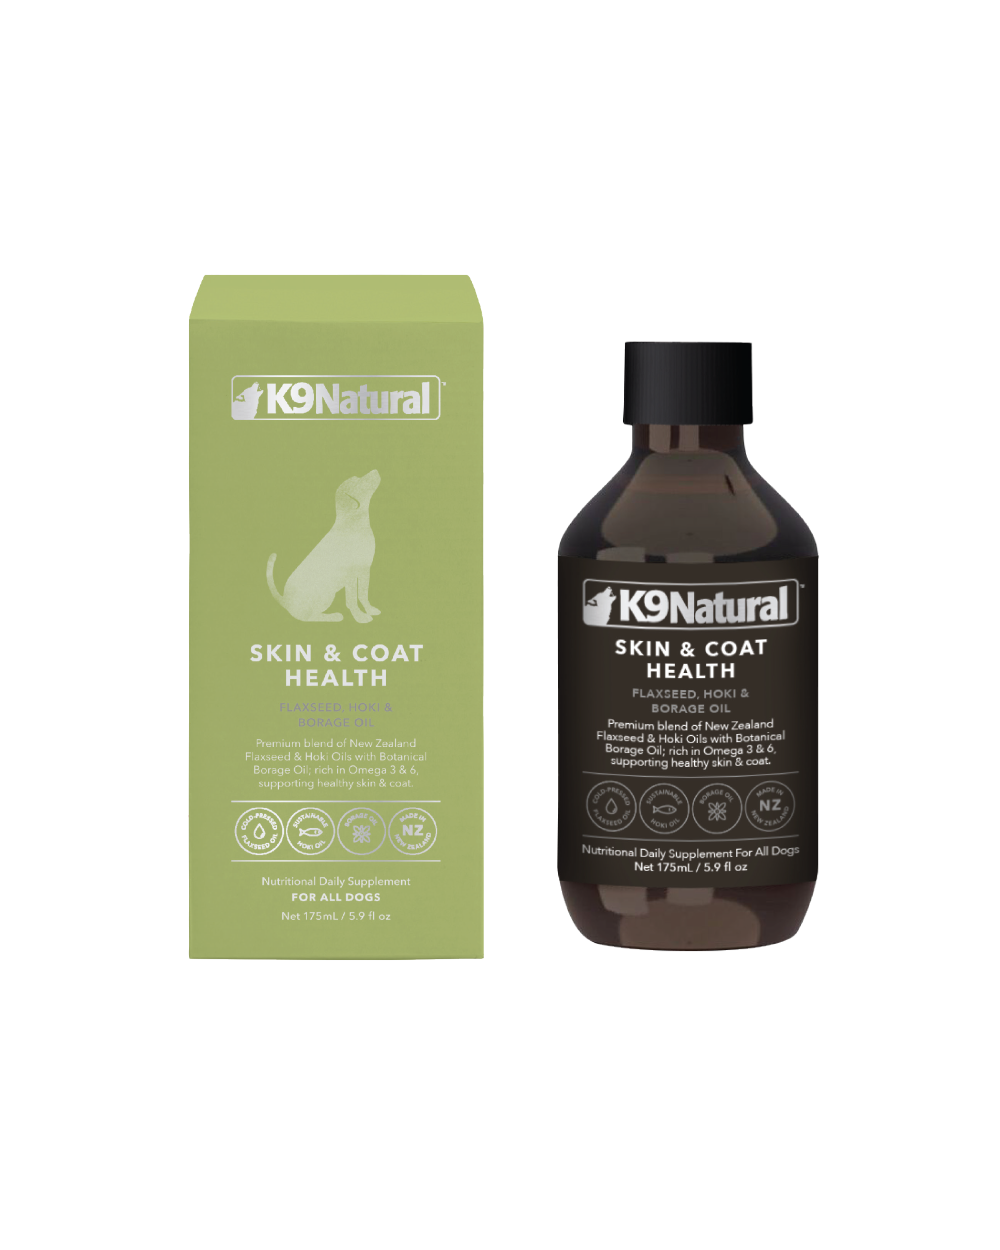 Skin & Coat Health oil